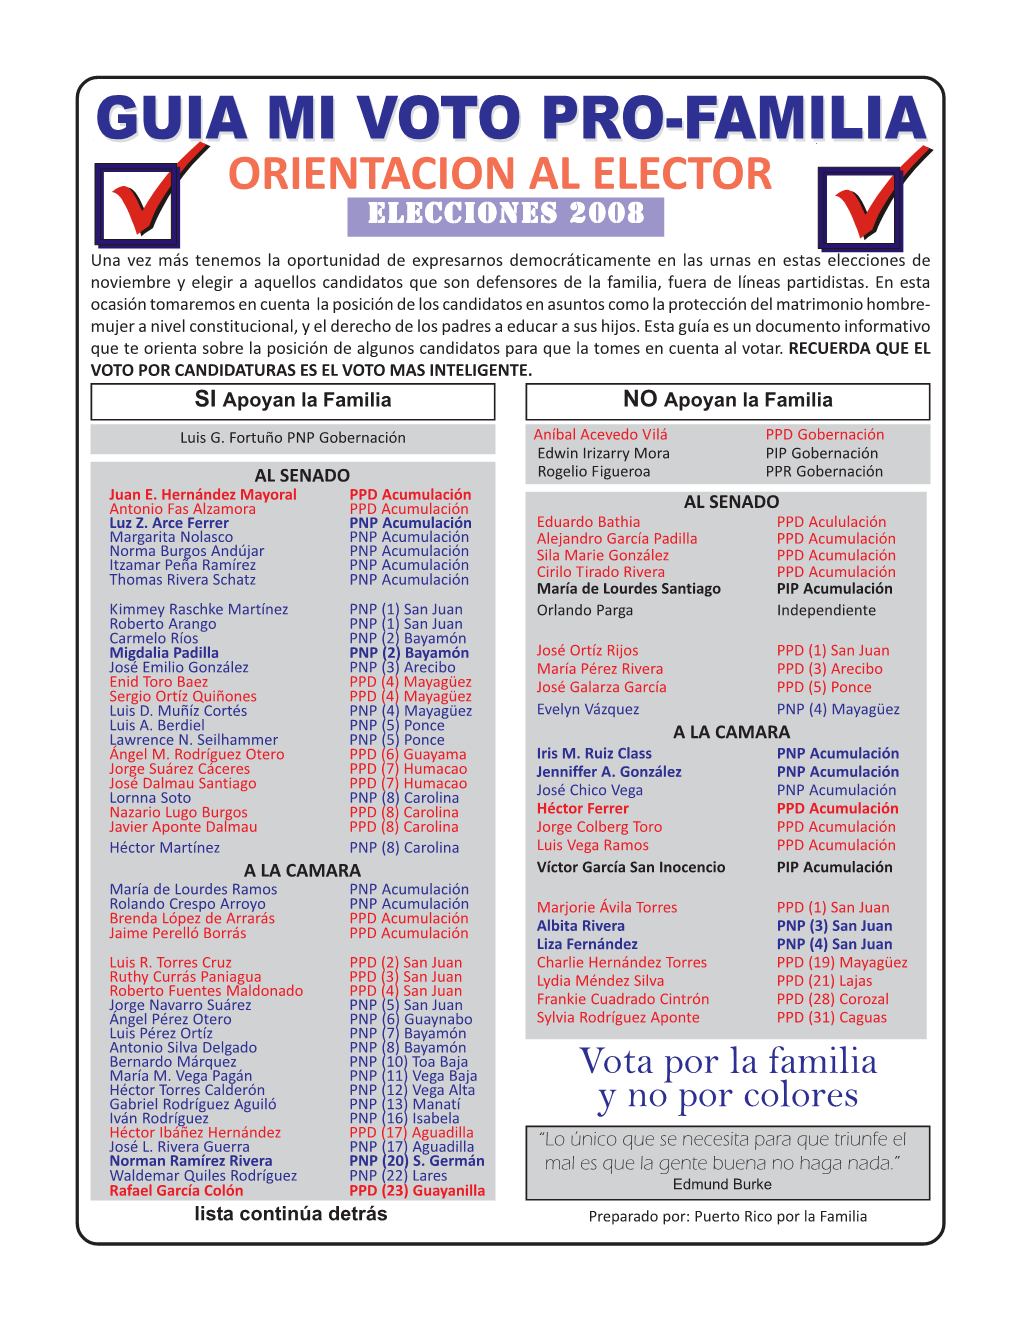 Guia Voto Pro-Familia.Pmd